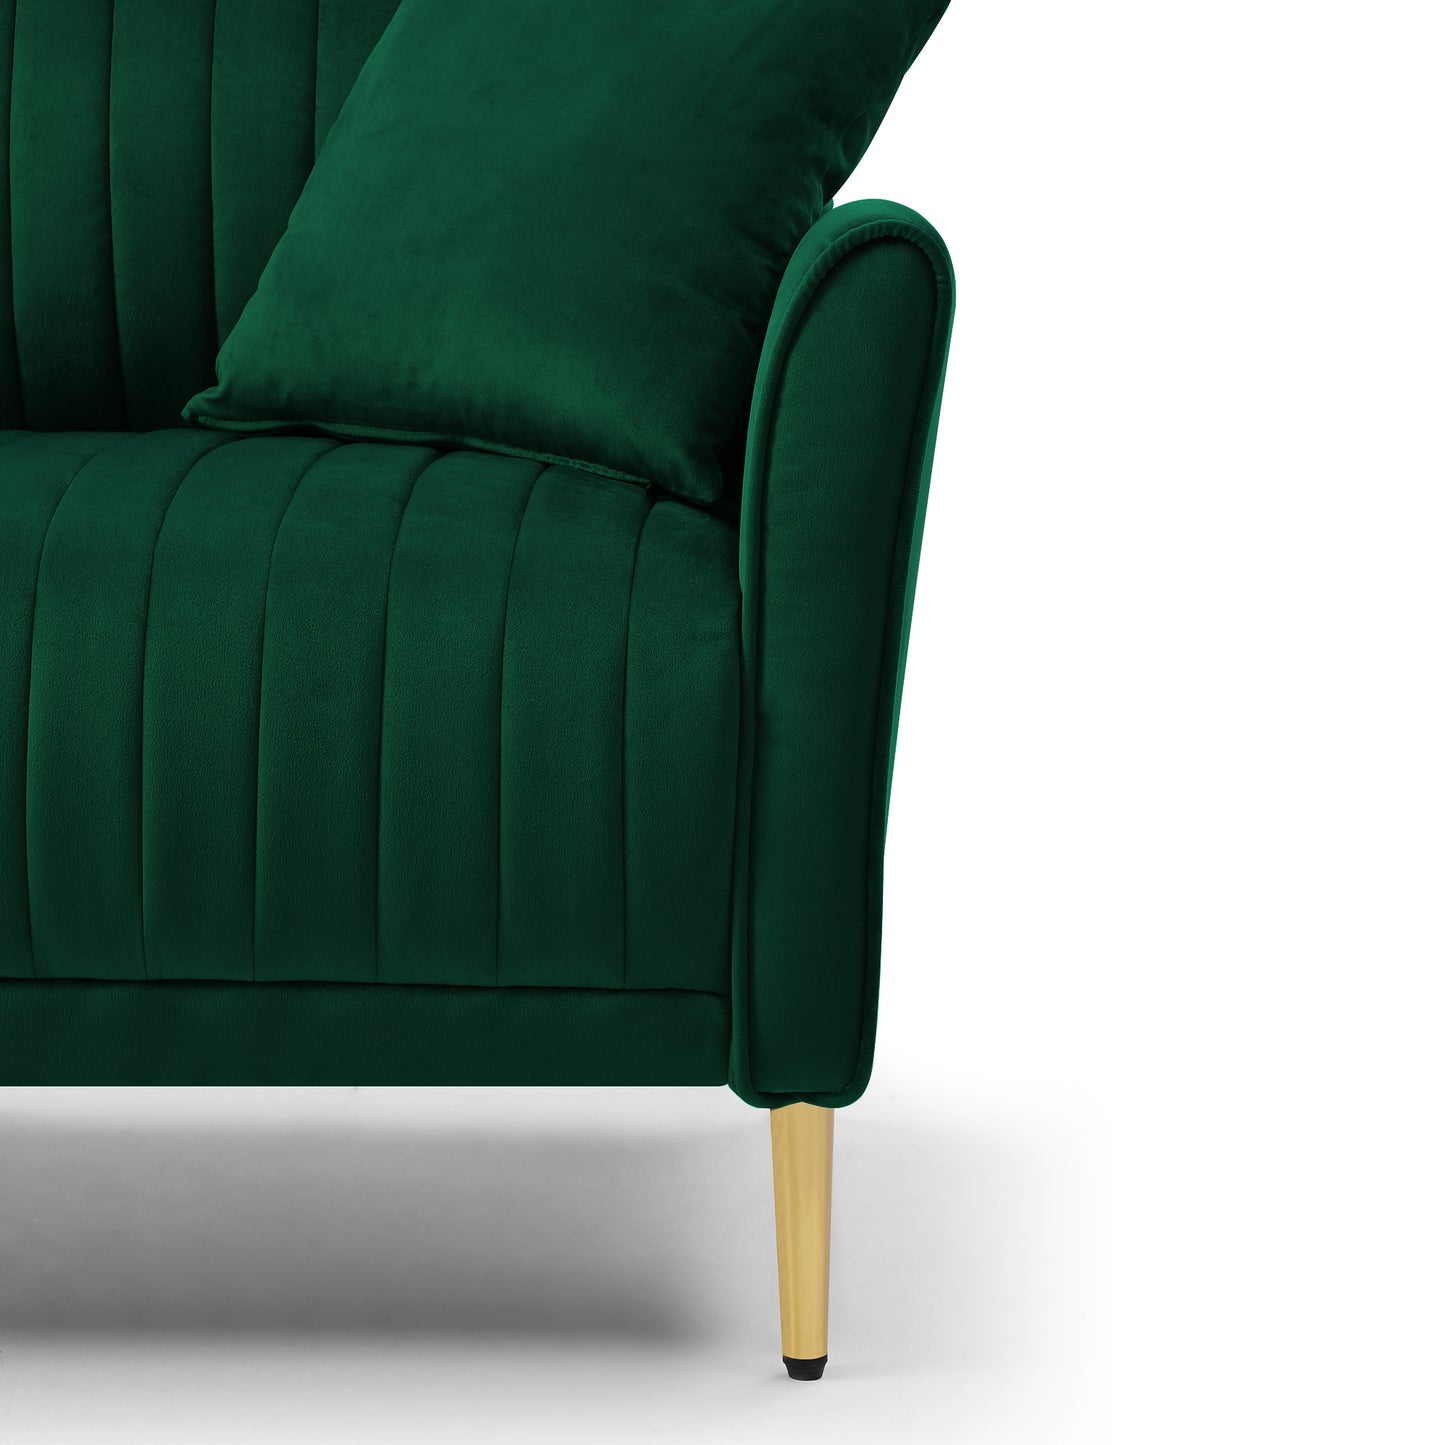 Channel Tufted Green Velvet Singel Living Room Sofa Accent Chair